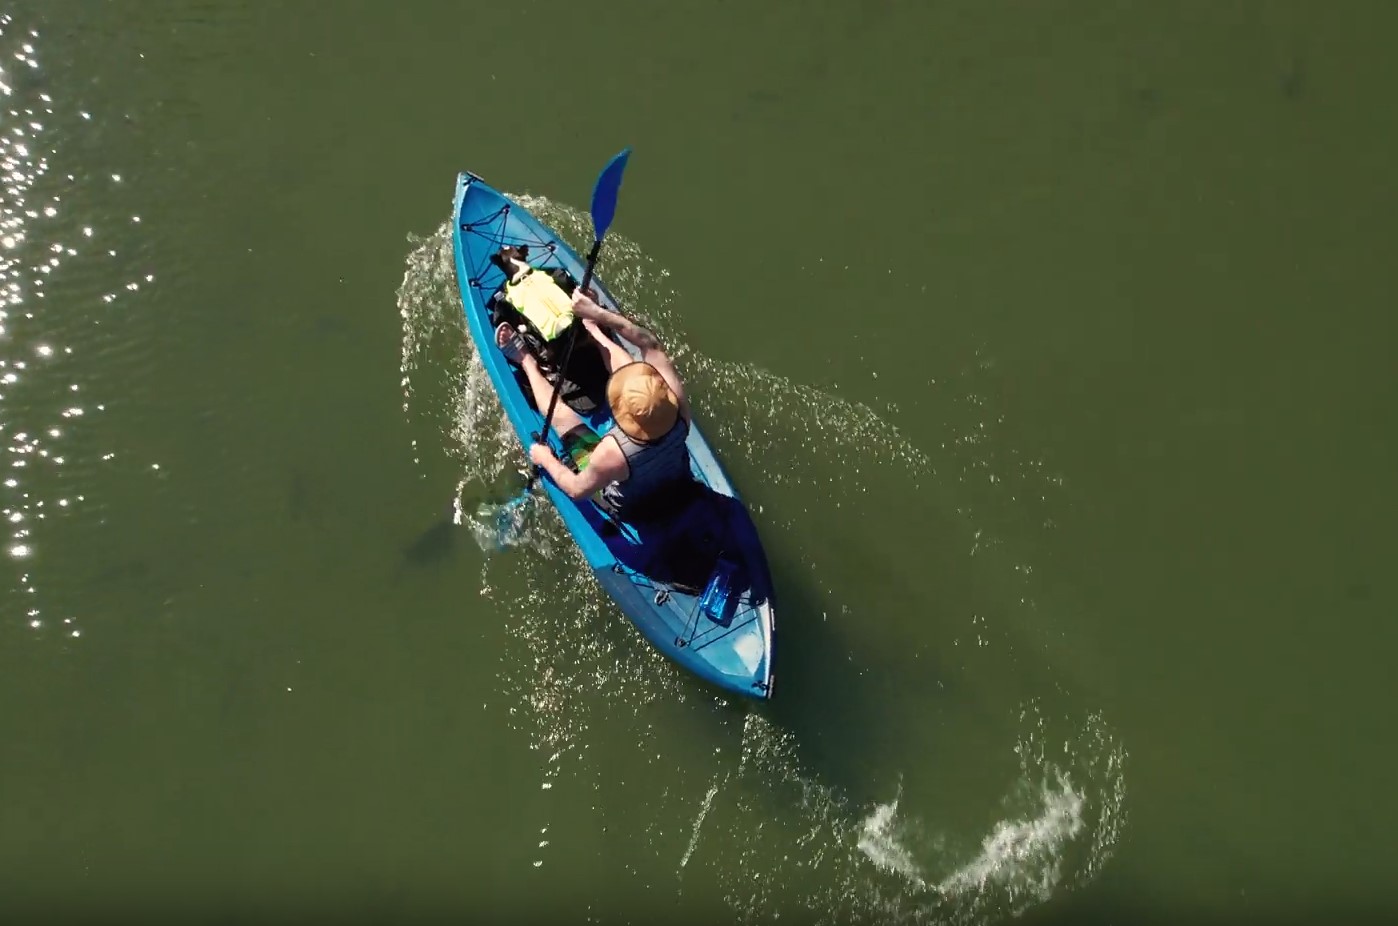 Técnicas y trucos de maniobras de remo en kayak